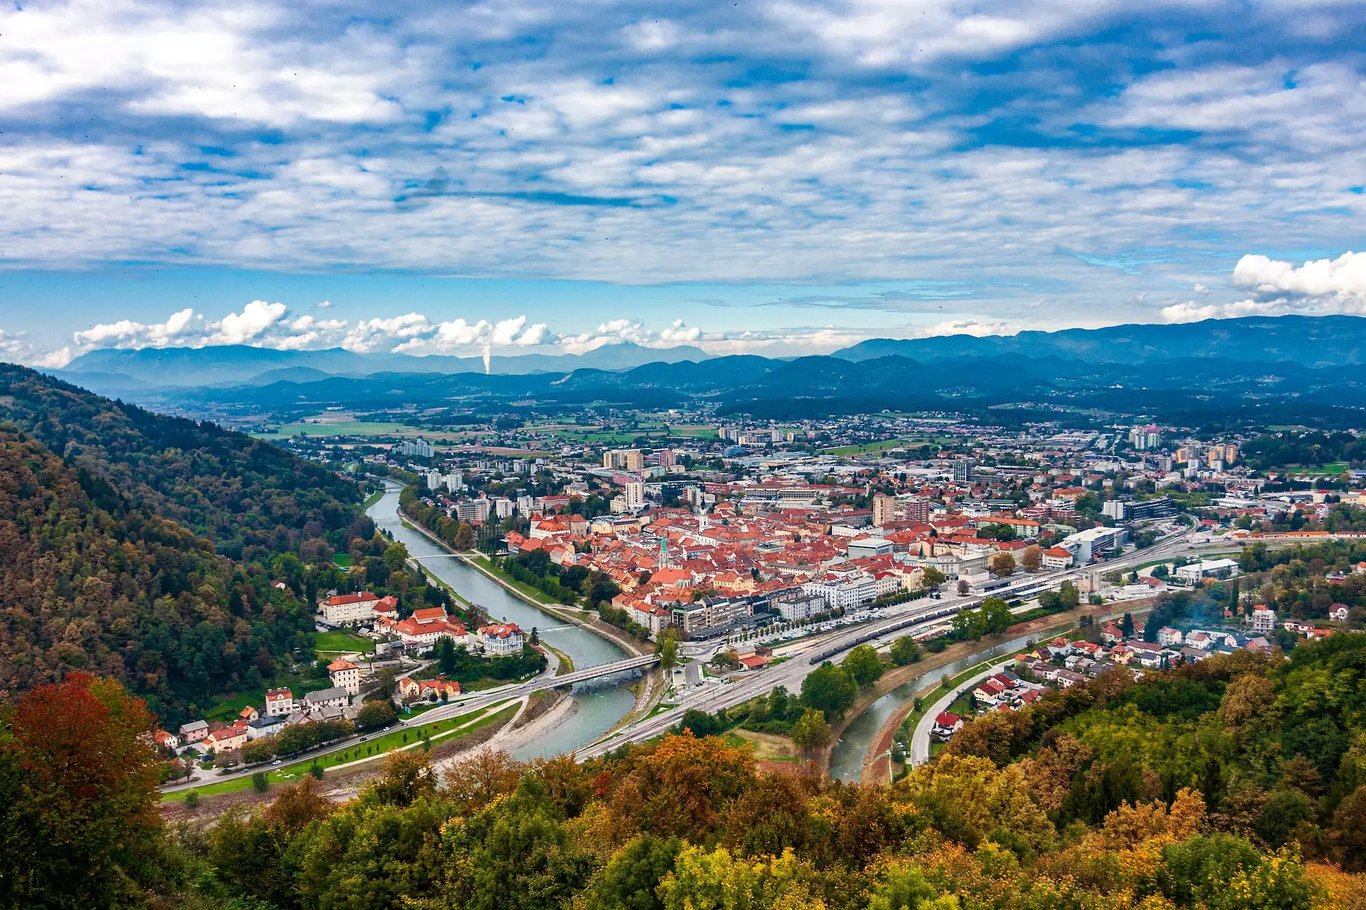 Celje város és környéke (Dezela Celjska) - Szlovénia Kisokos 2022